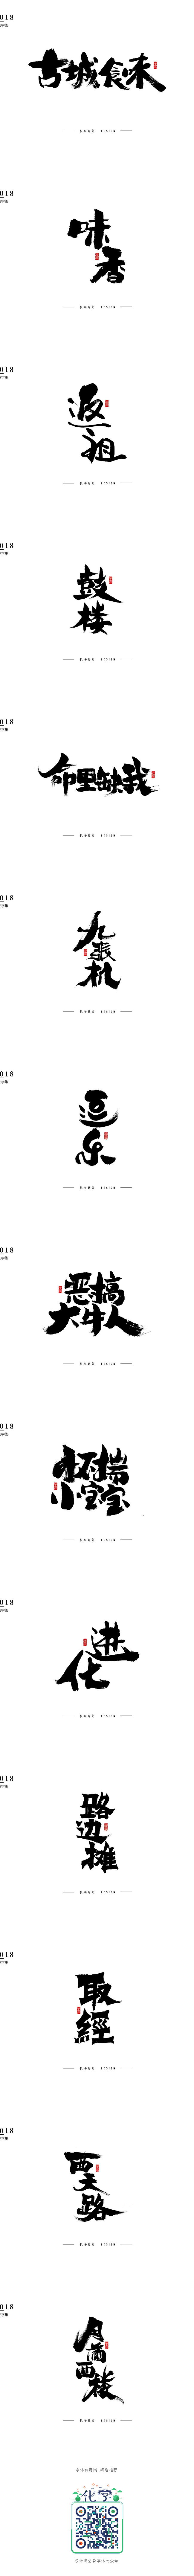 长安书秀 字集-字体传奇网-中国首个字体...